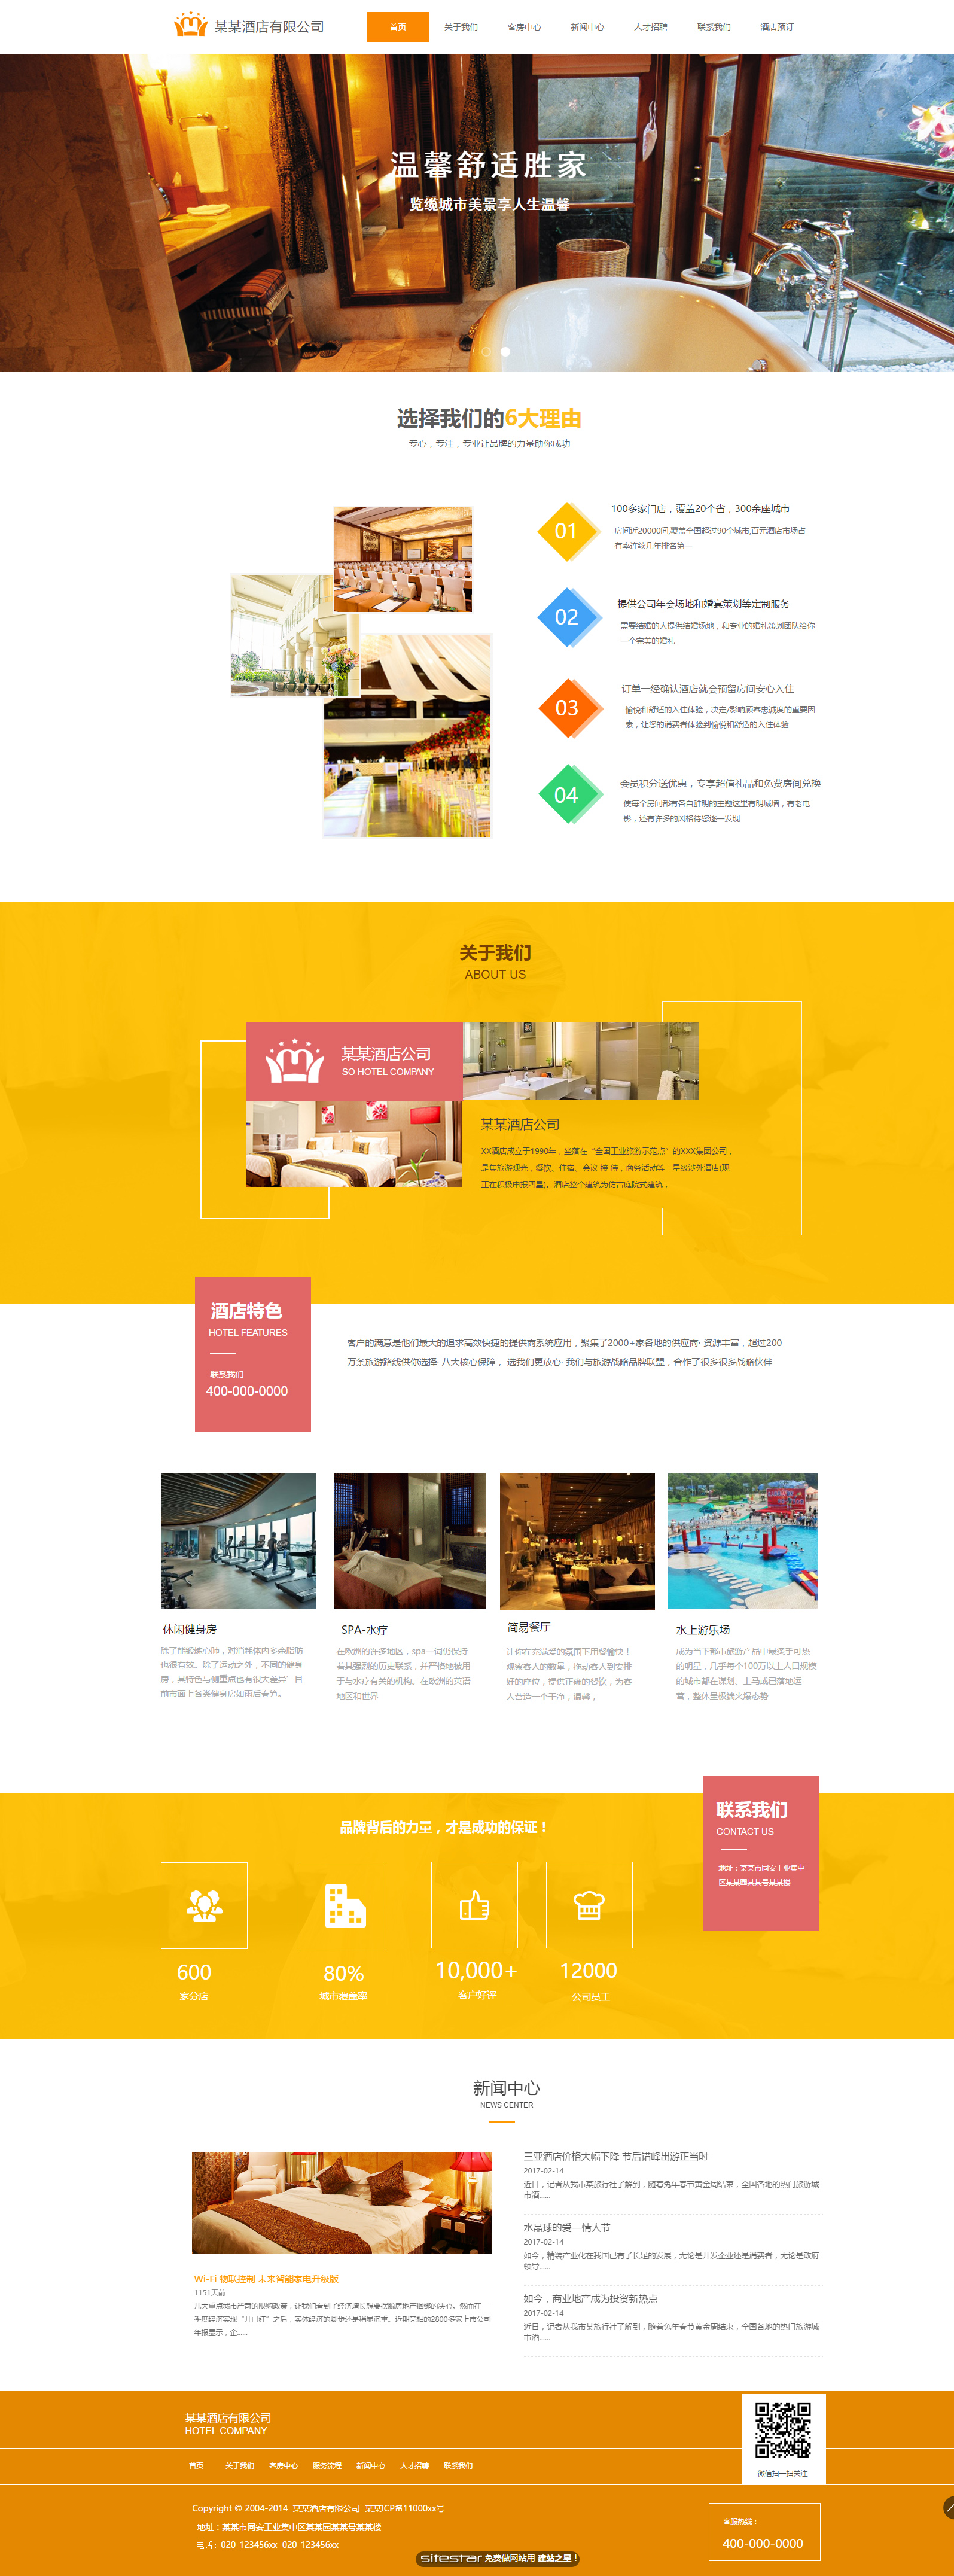 酒店网站模板-hotels-230